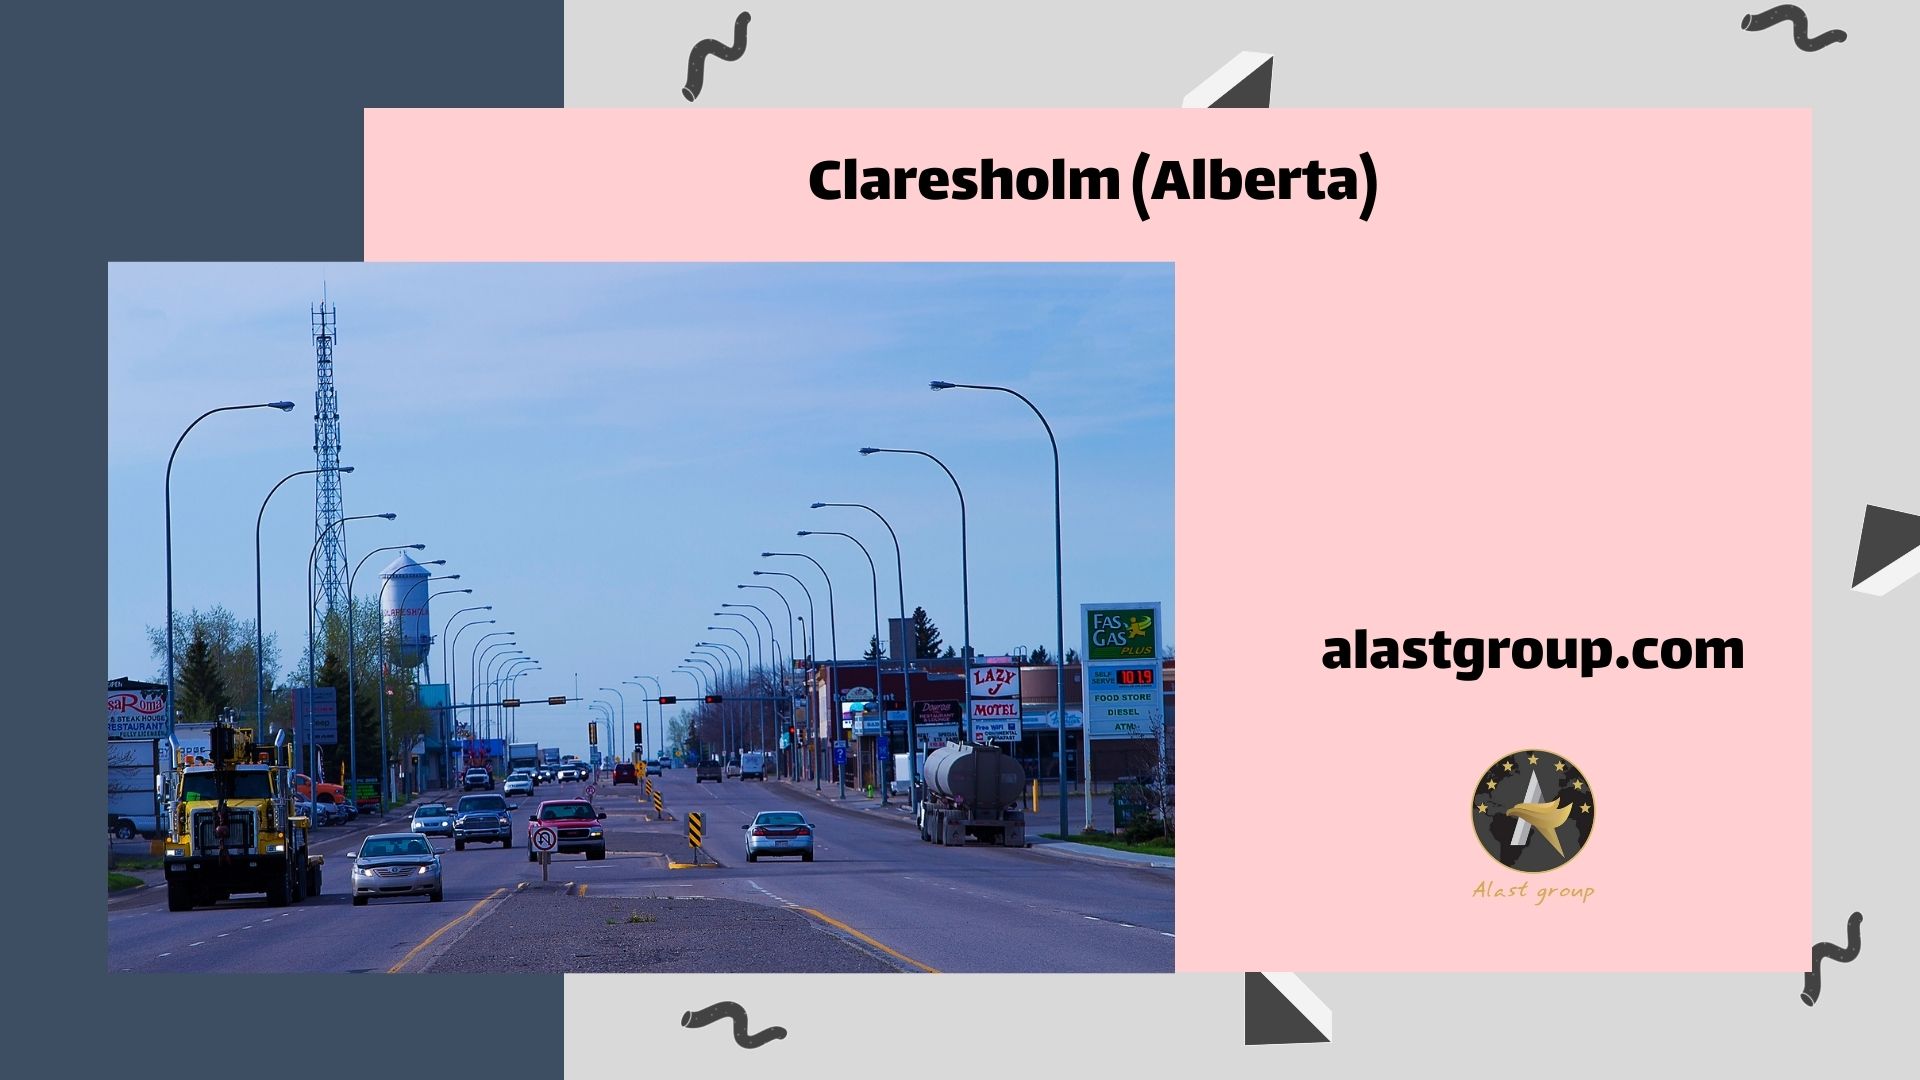 نام شهر: Claresholm (Alberta)